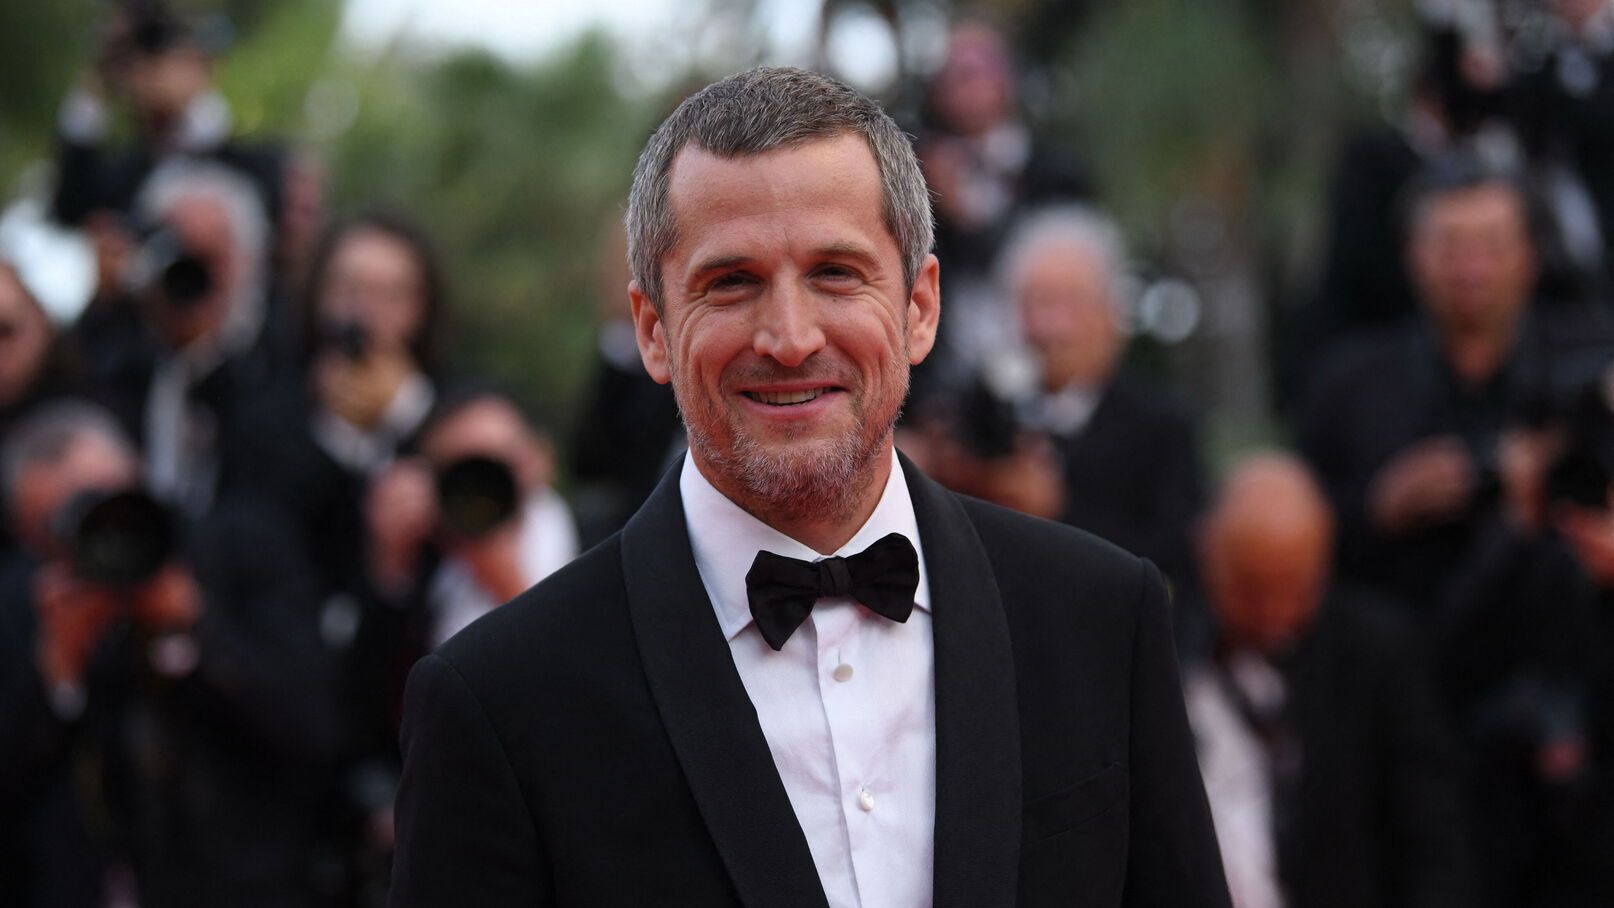 Guillaume Canet : ses retrouvailles avec son ex-femme sur le tapis rouge de Cannes